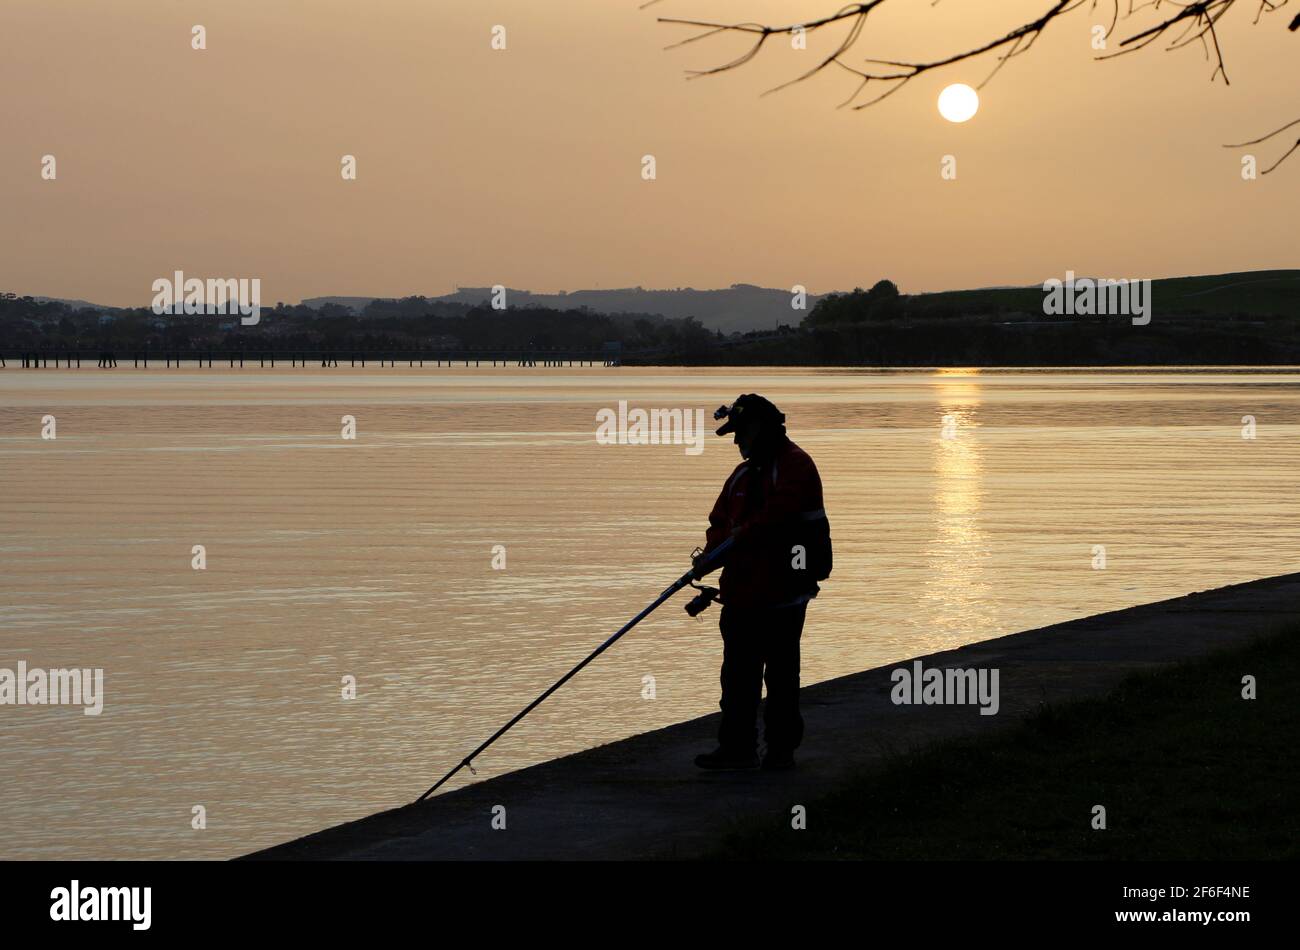 Lone uomo canna e pesca con lenza dal bordo delle acque in una tranquilla mattinata di sole con la sabbia sahariana sospesa Santander Bay Cantabria Spagna Foto Stock